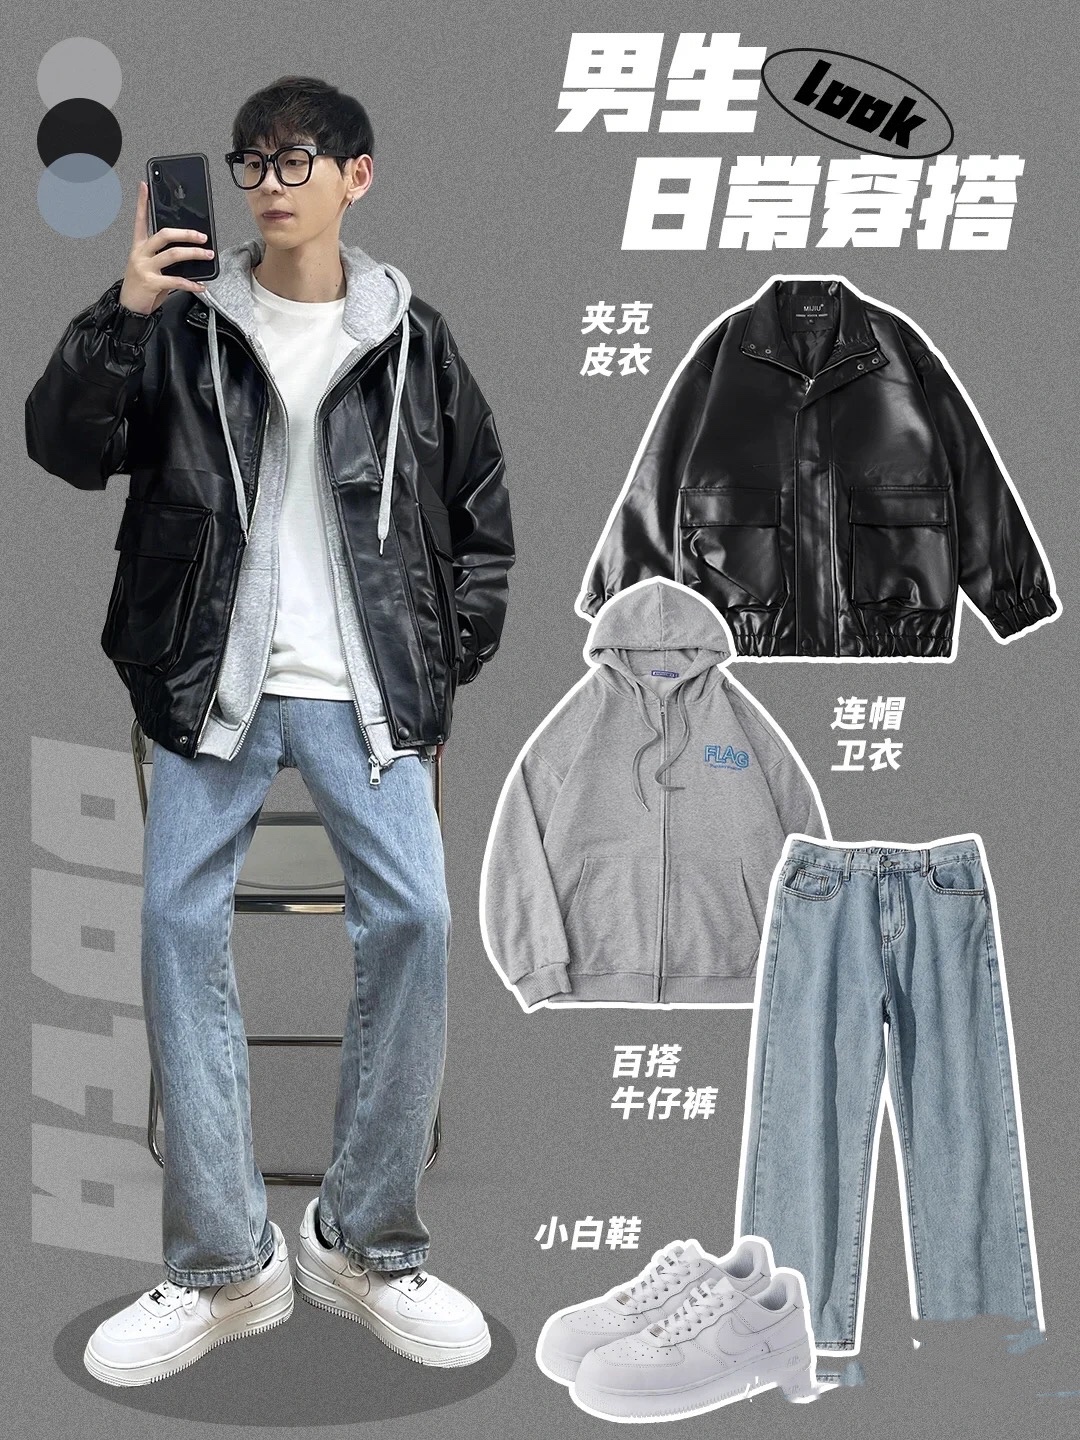 他們都愛穿皮衣！20位男明星示範皮夾克有型穿搭-時尚新聞-GQ瀟灑男人網 | GQ Taiwan